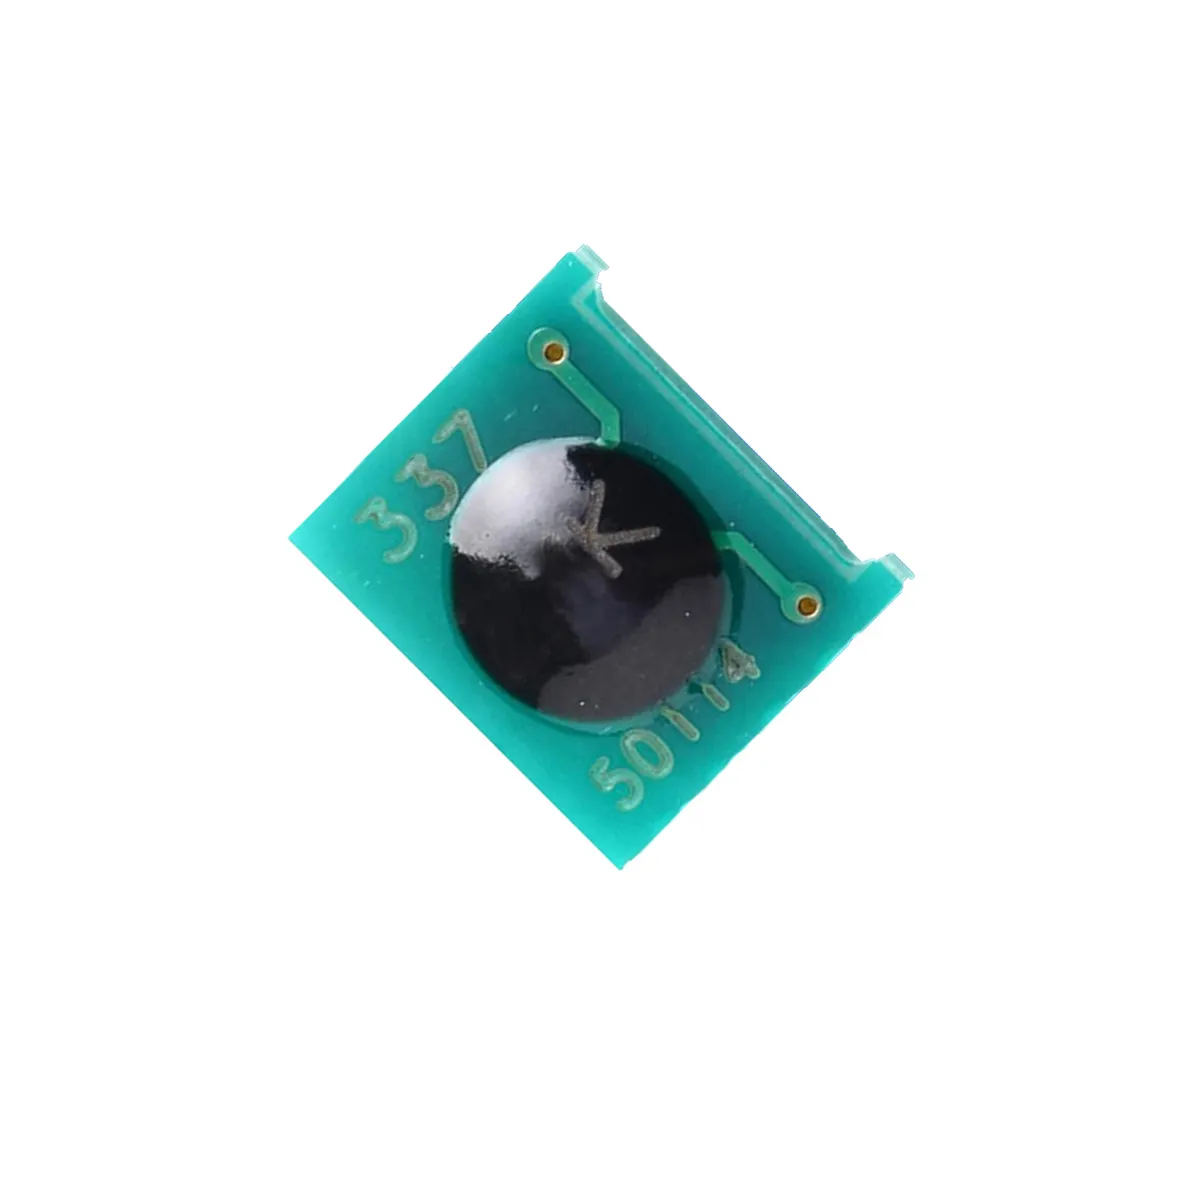 Chips/Laserdrucker Ersatzteile Patrone Reset Toner Chip/für Canon lbp-5050 Chips Reset Toner Patrone Chips